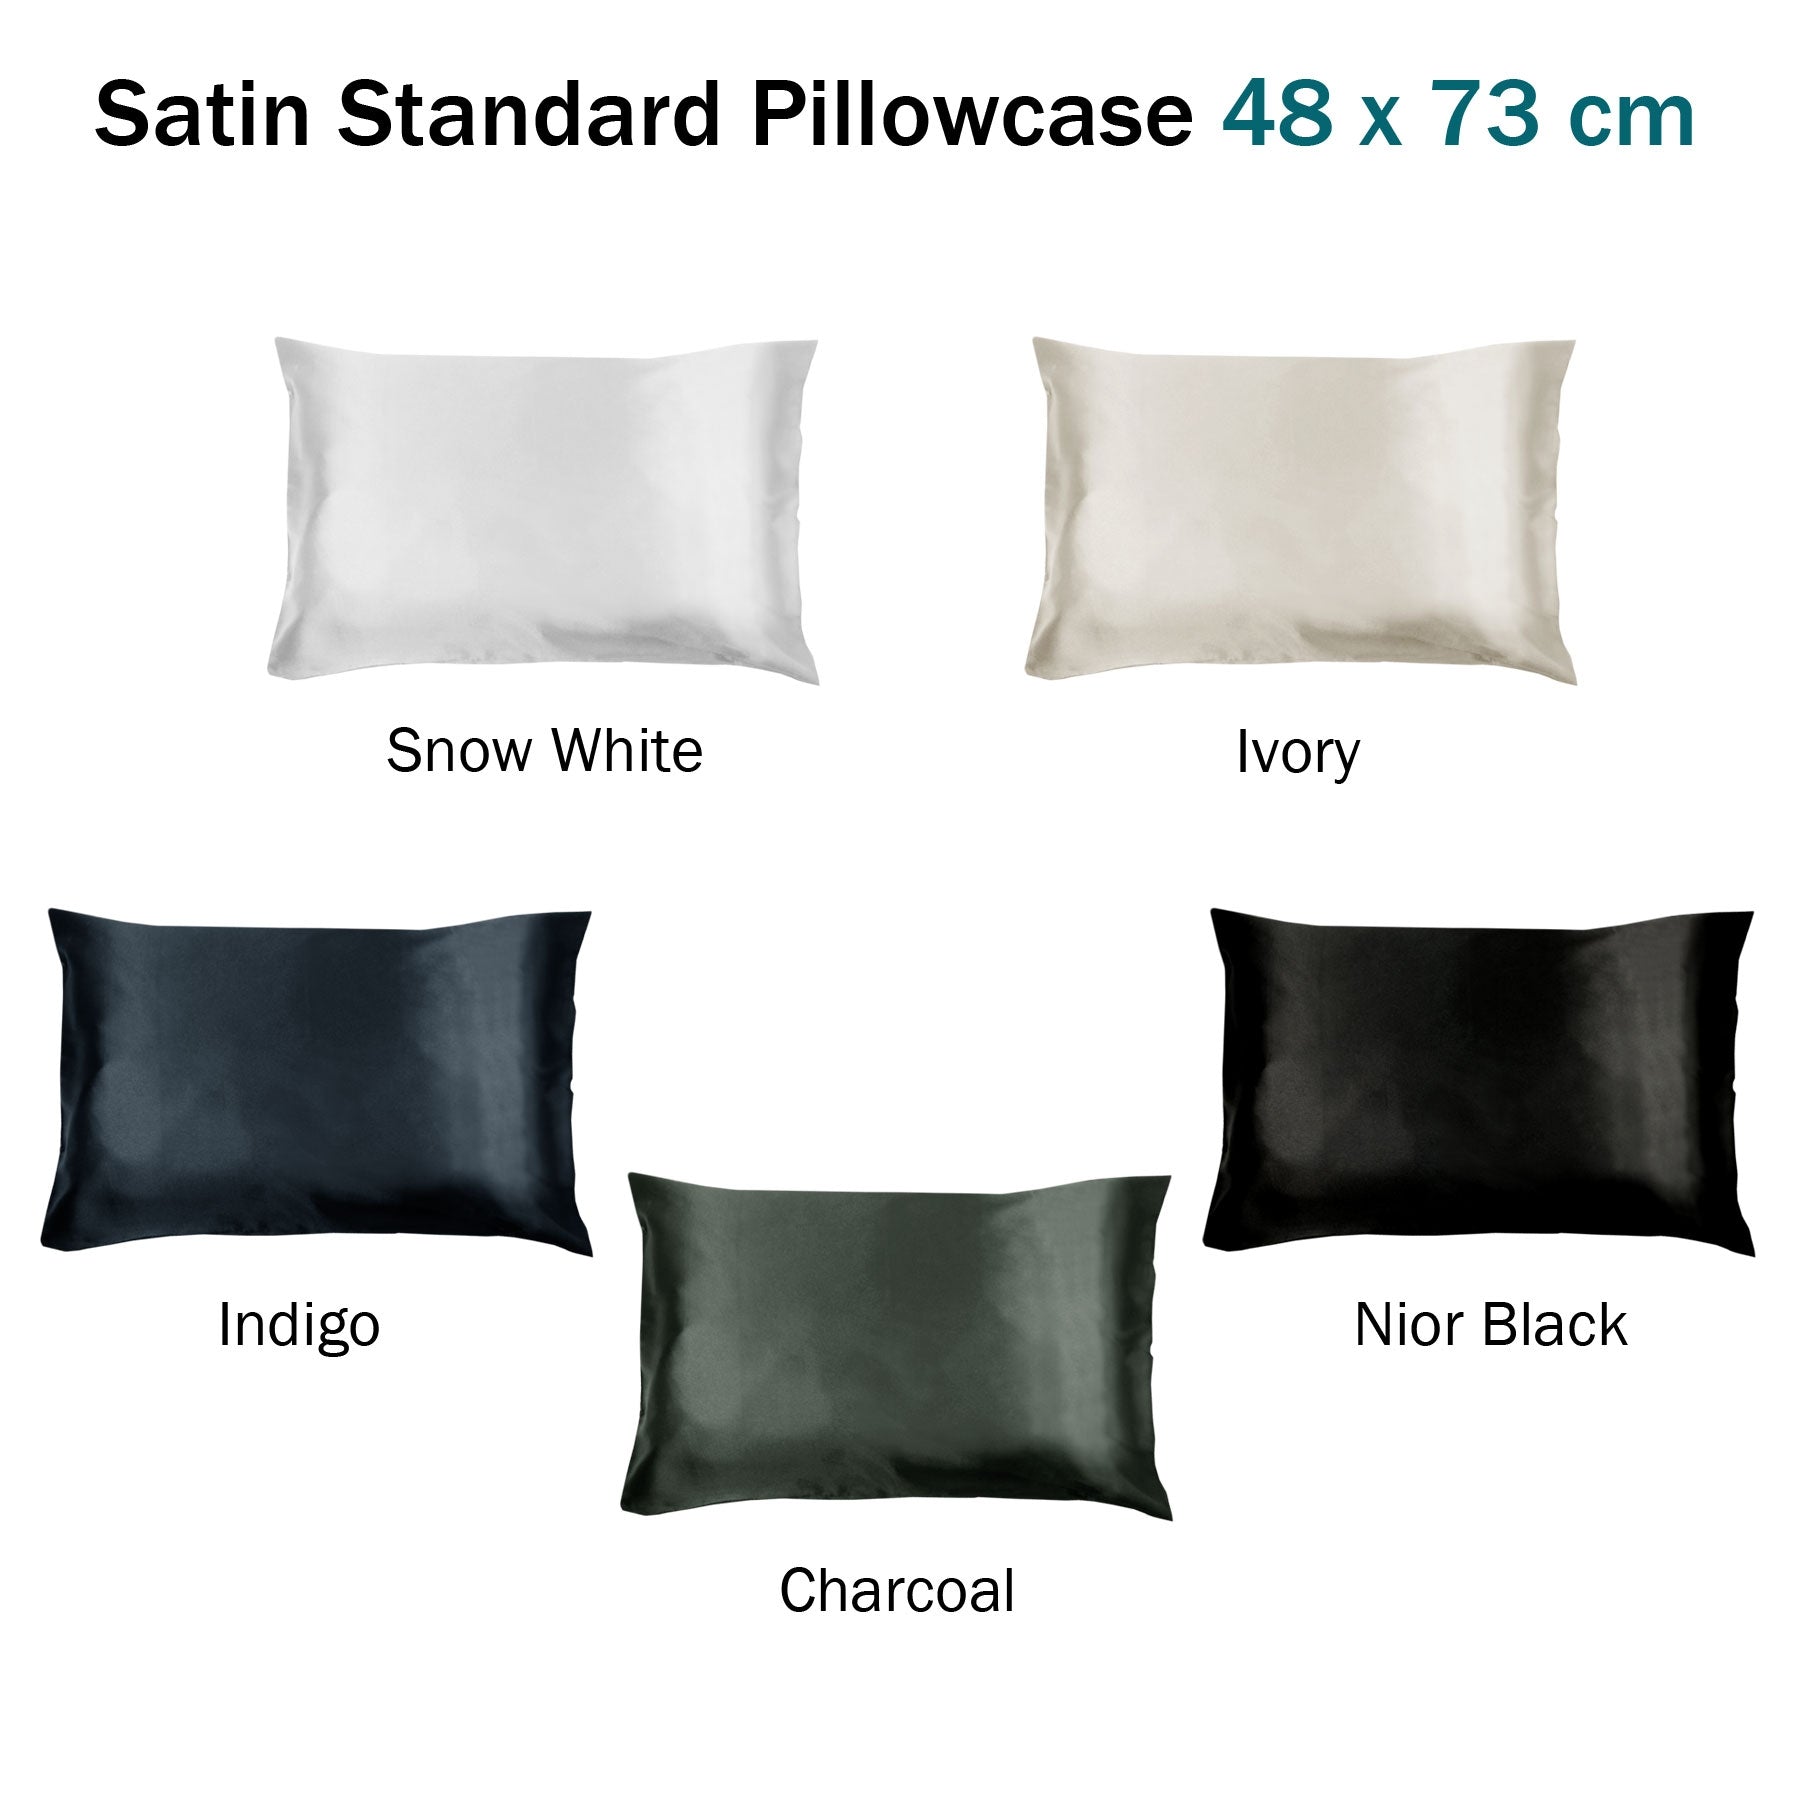 Satin Standard Pillowcase Indigo